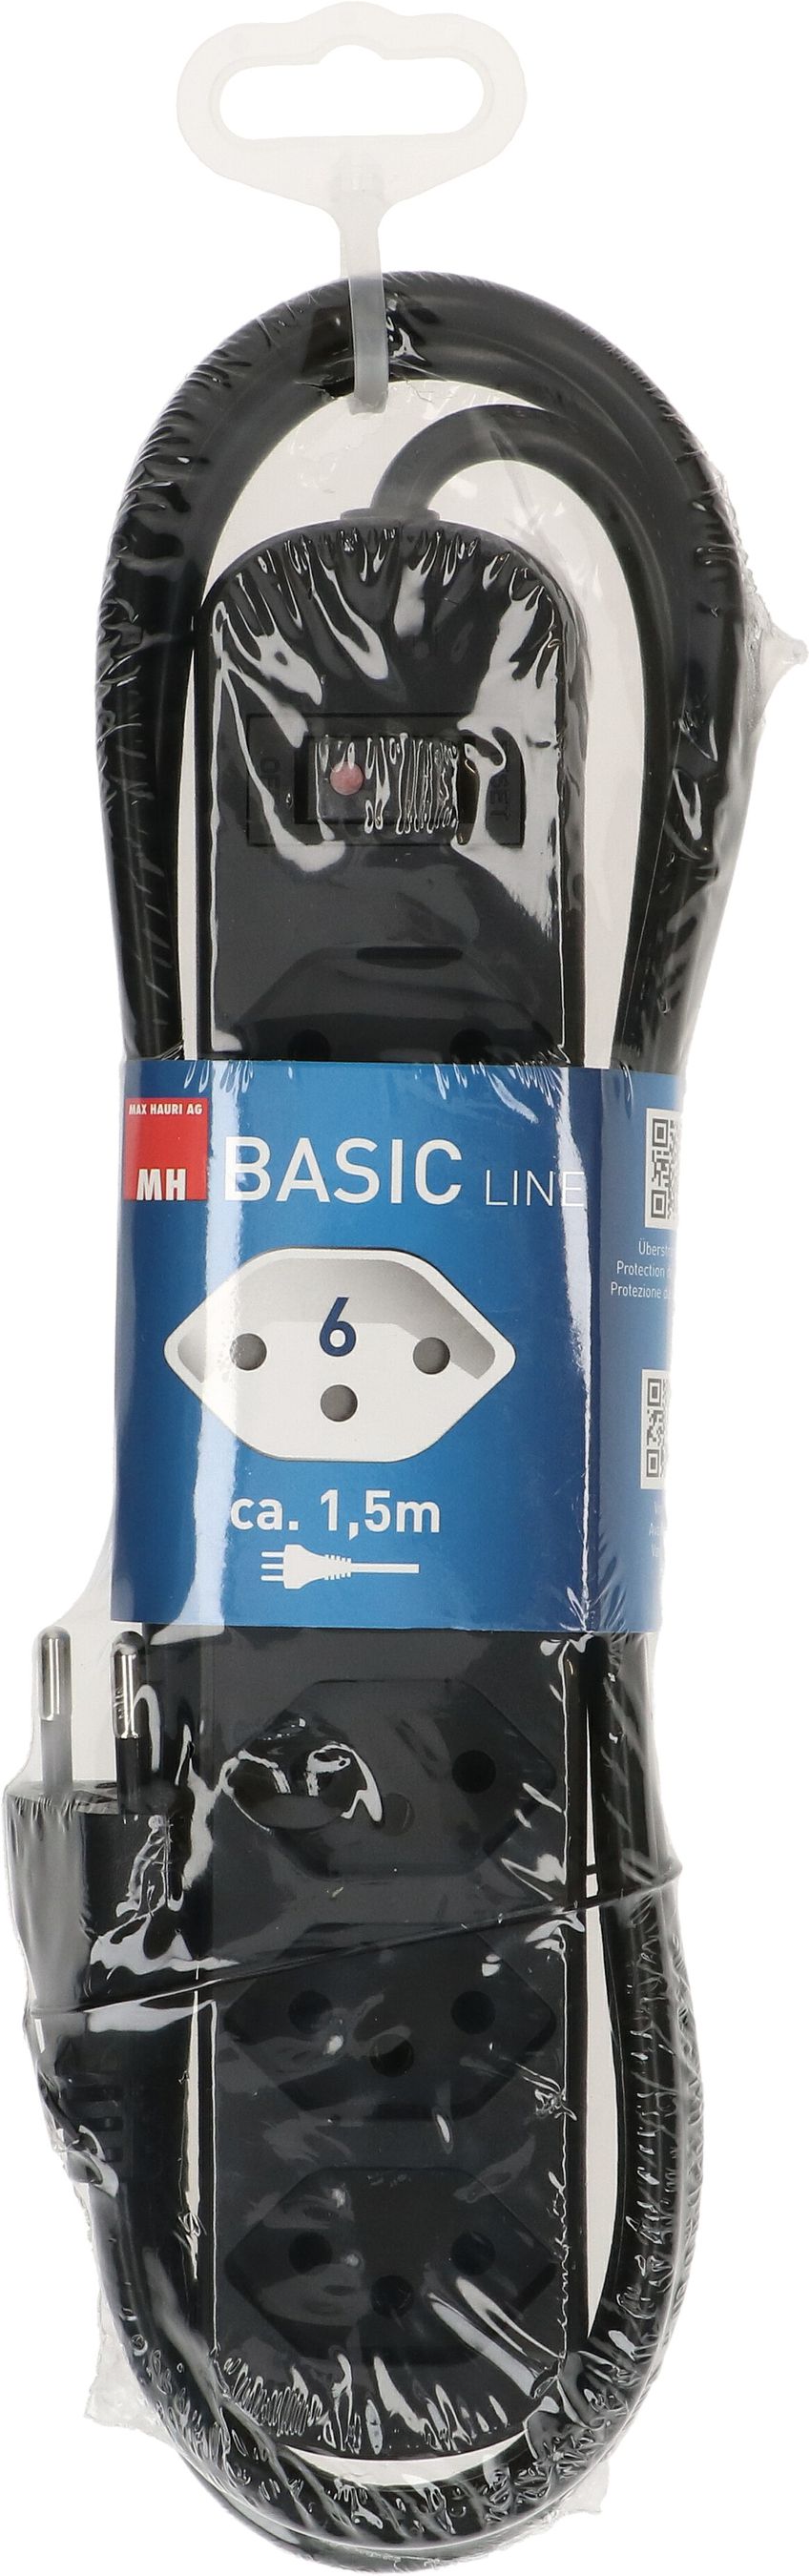 multipresa Basic Line 6x tipo 13 nero interruttore 1.5m